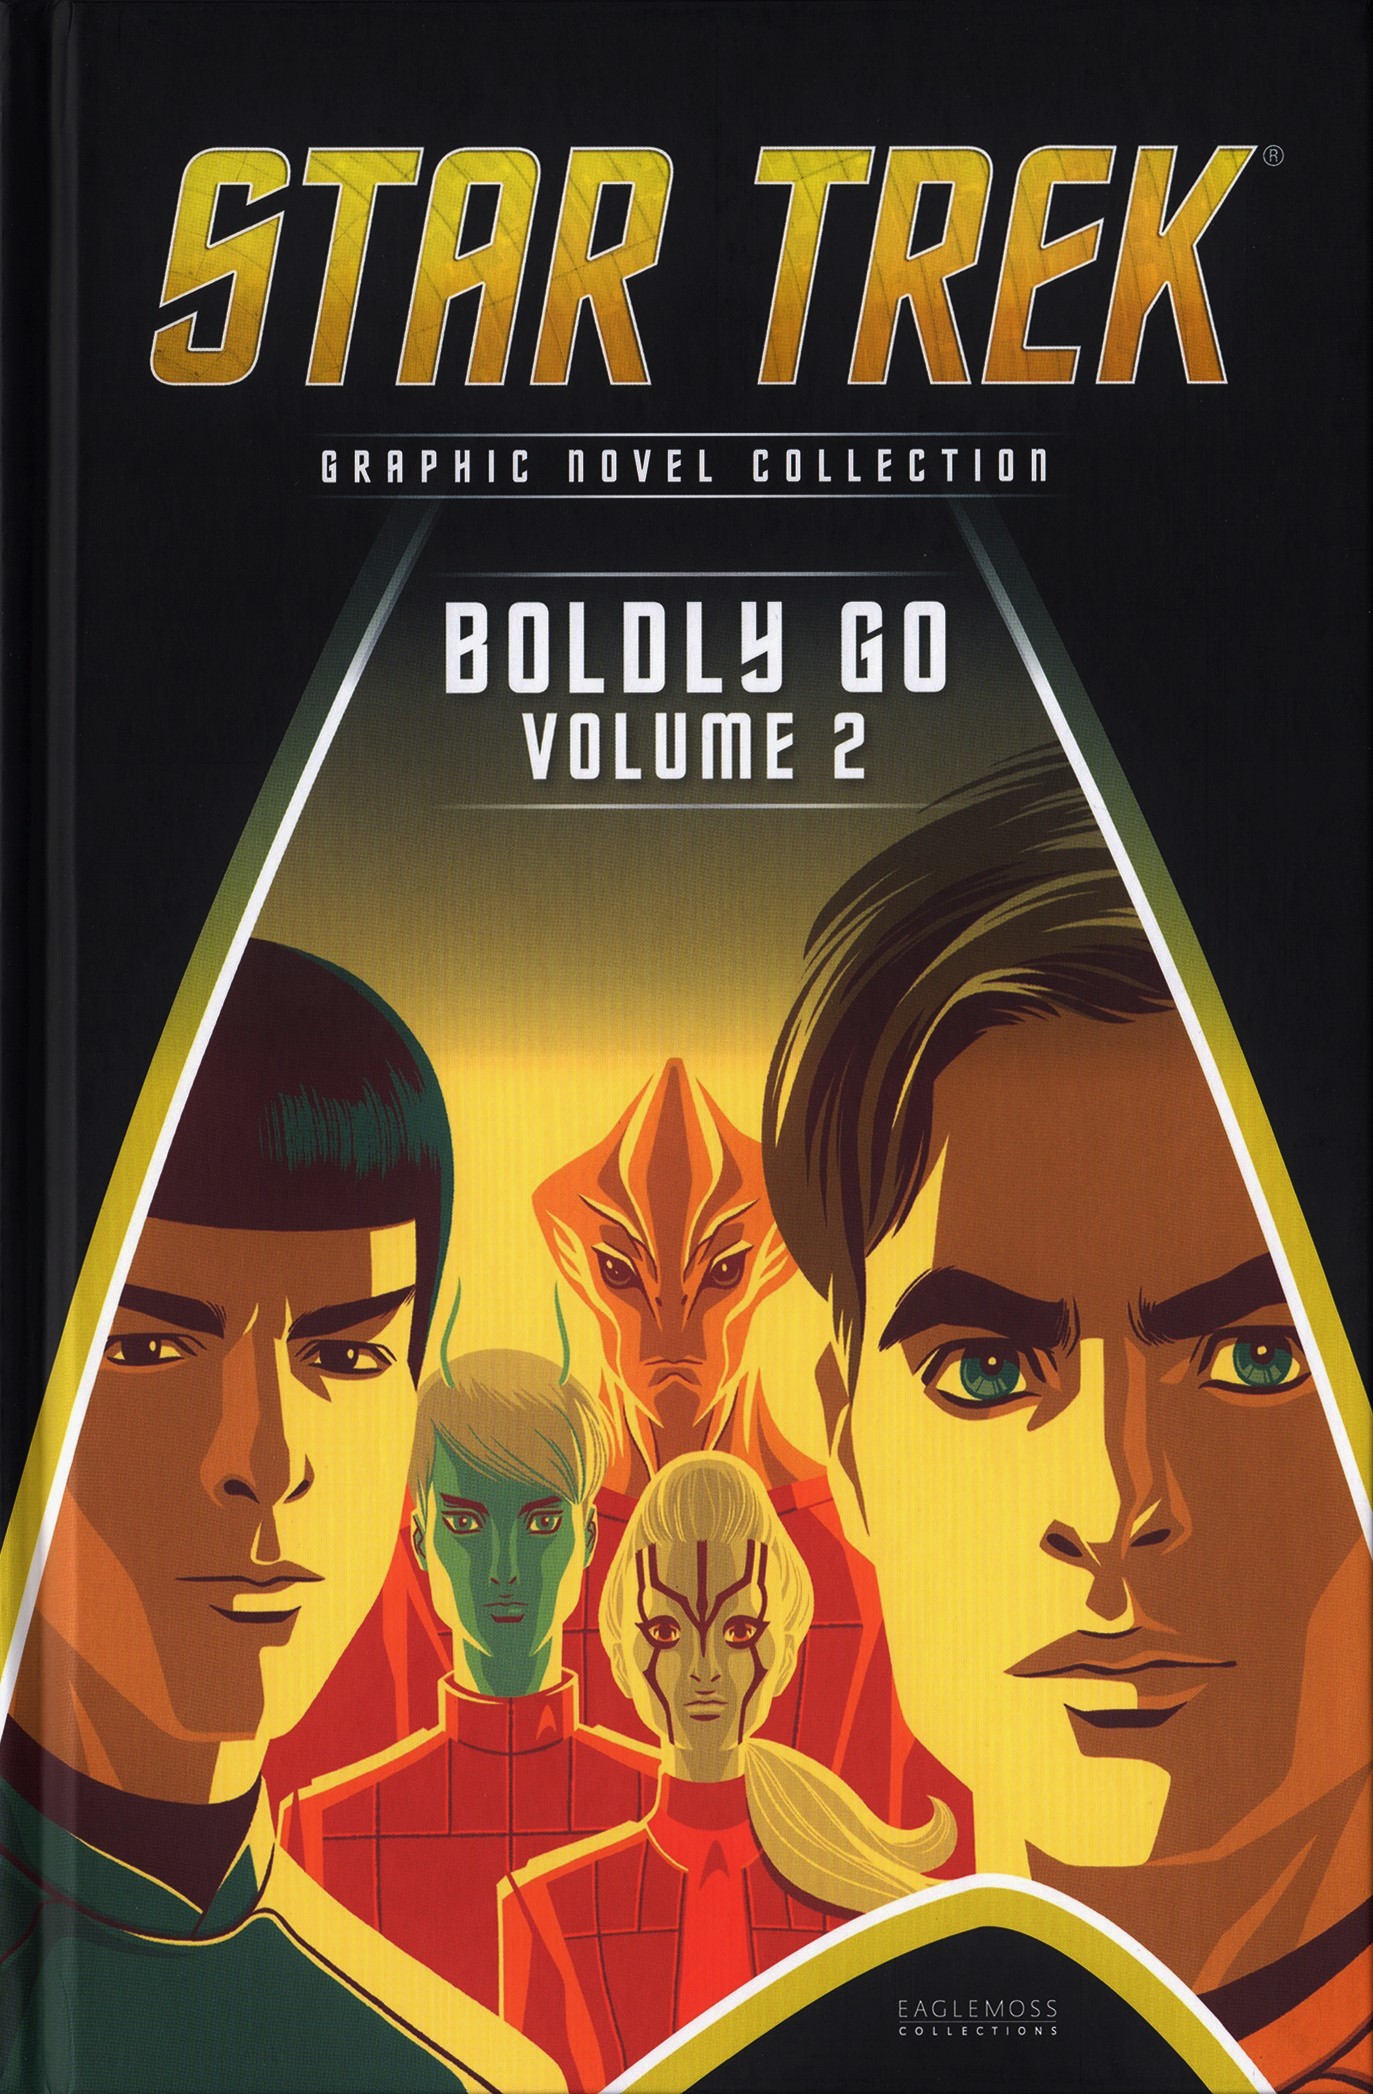 Eaglemoss_Star_Trek_Graphic_Novel_Collection_Issue_92